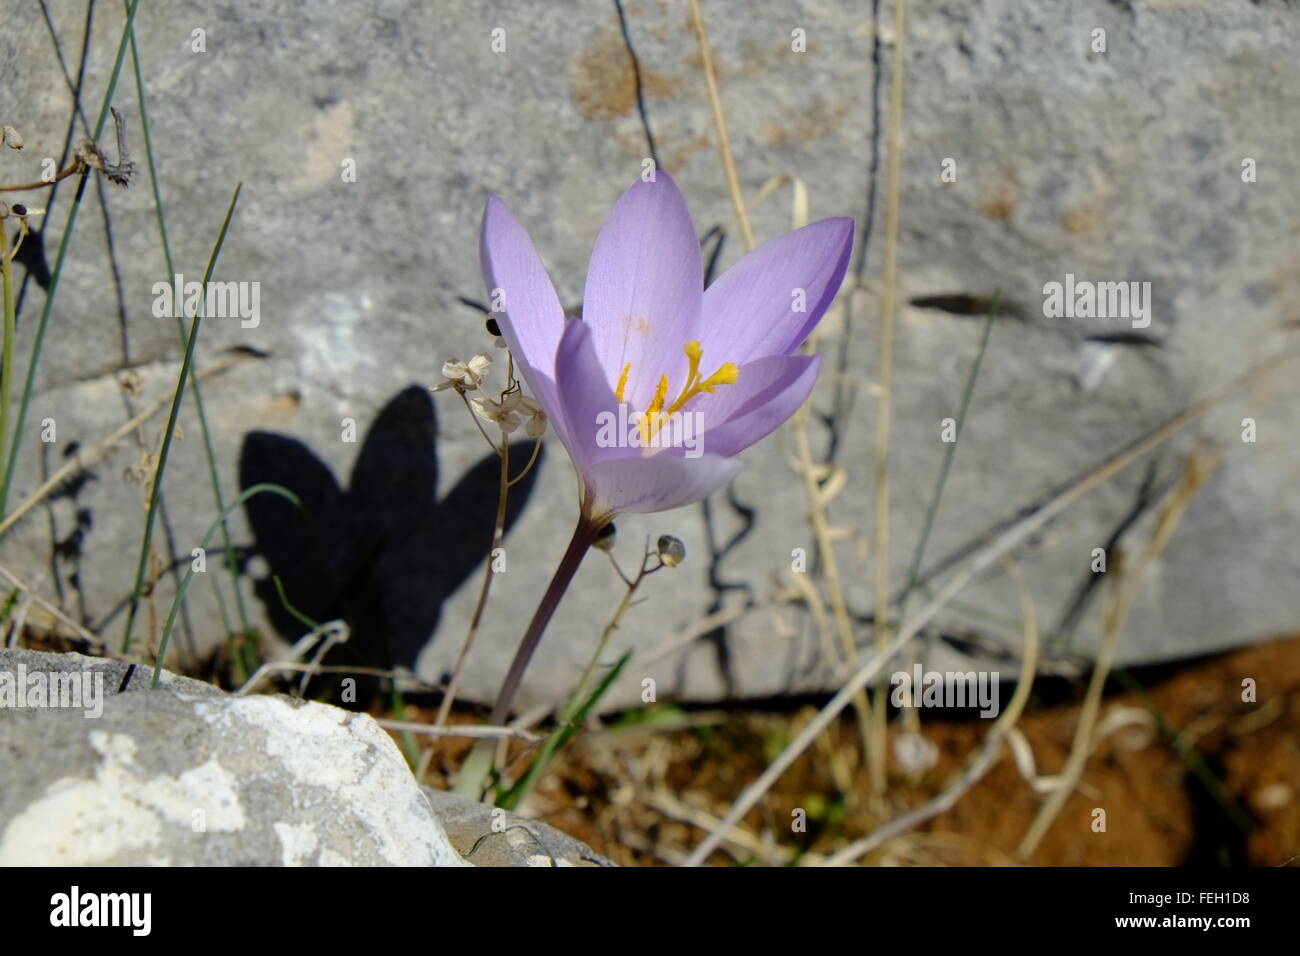 Il croco selvatico (croccus sativus) che produce lo zafferano, crescendo ad altitudine. Navazuelo, Cordoba. Spagna Foto Stock